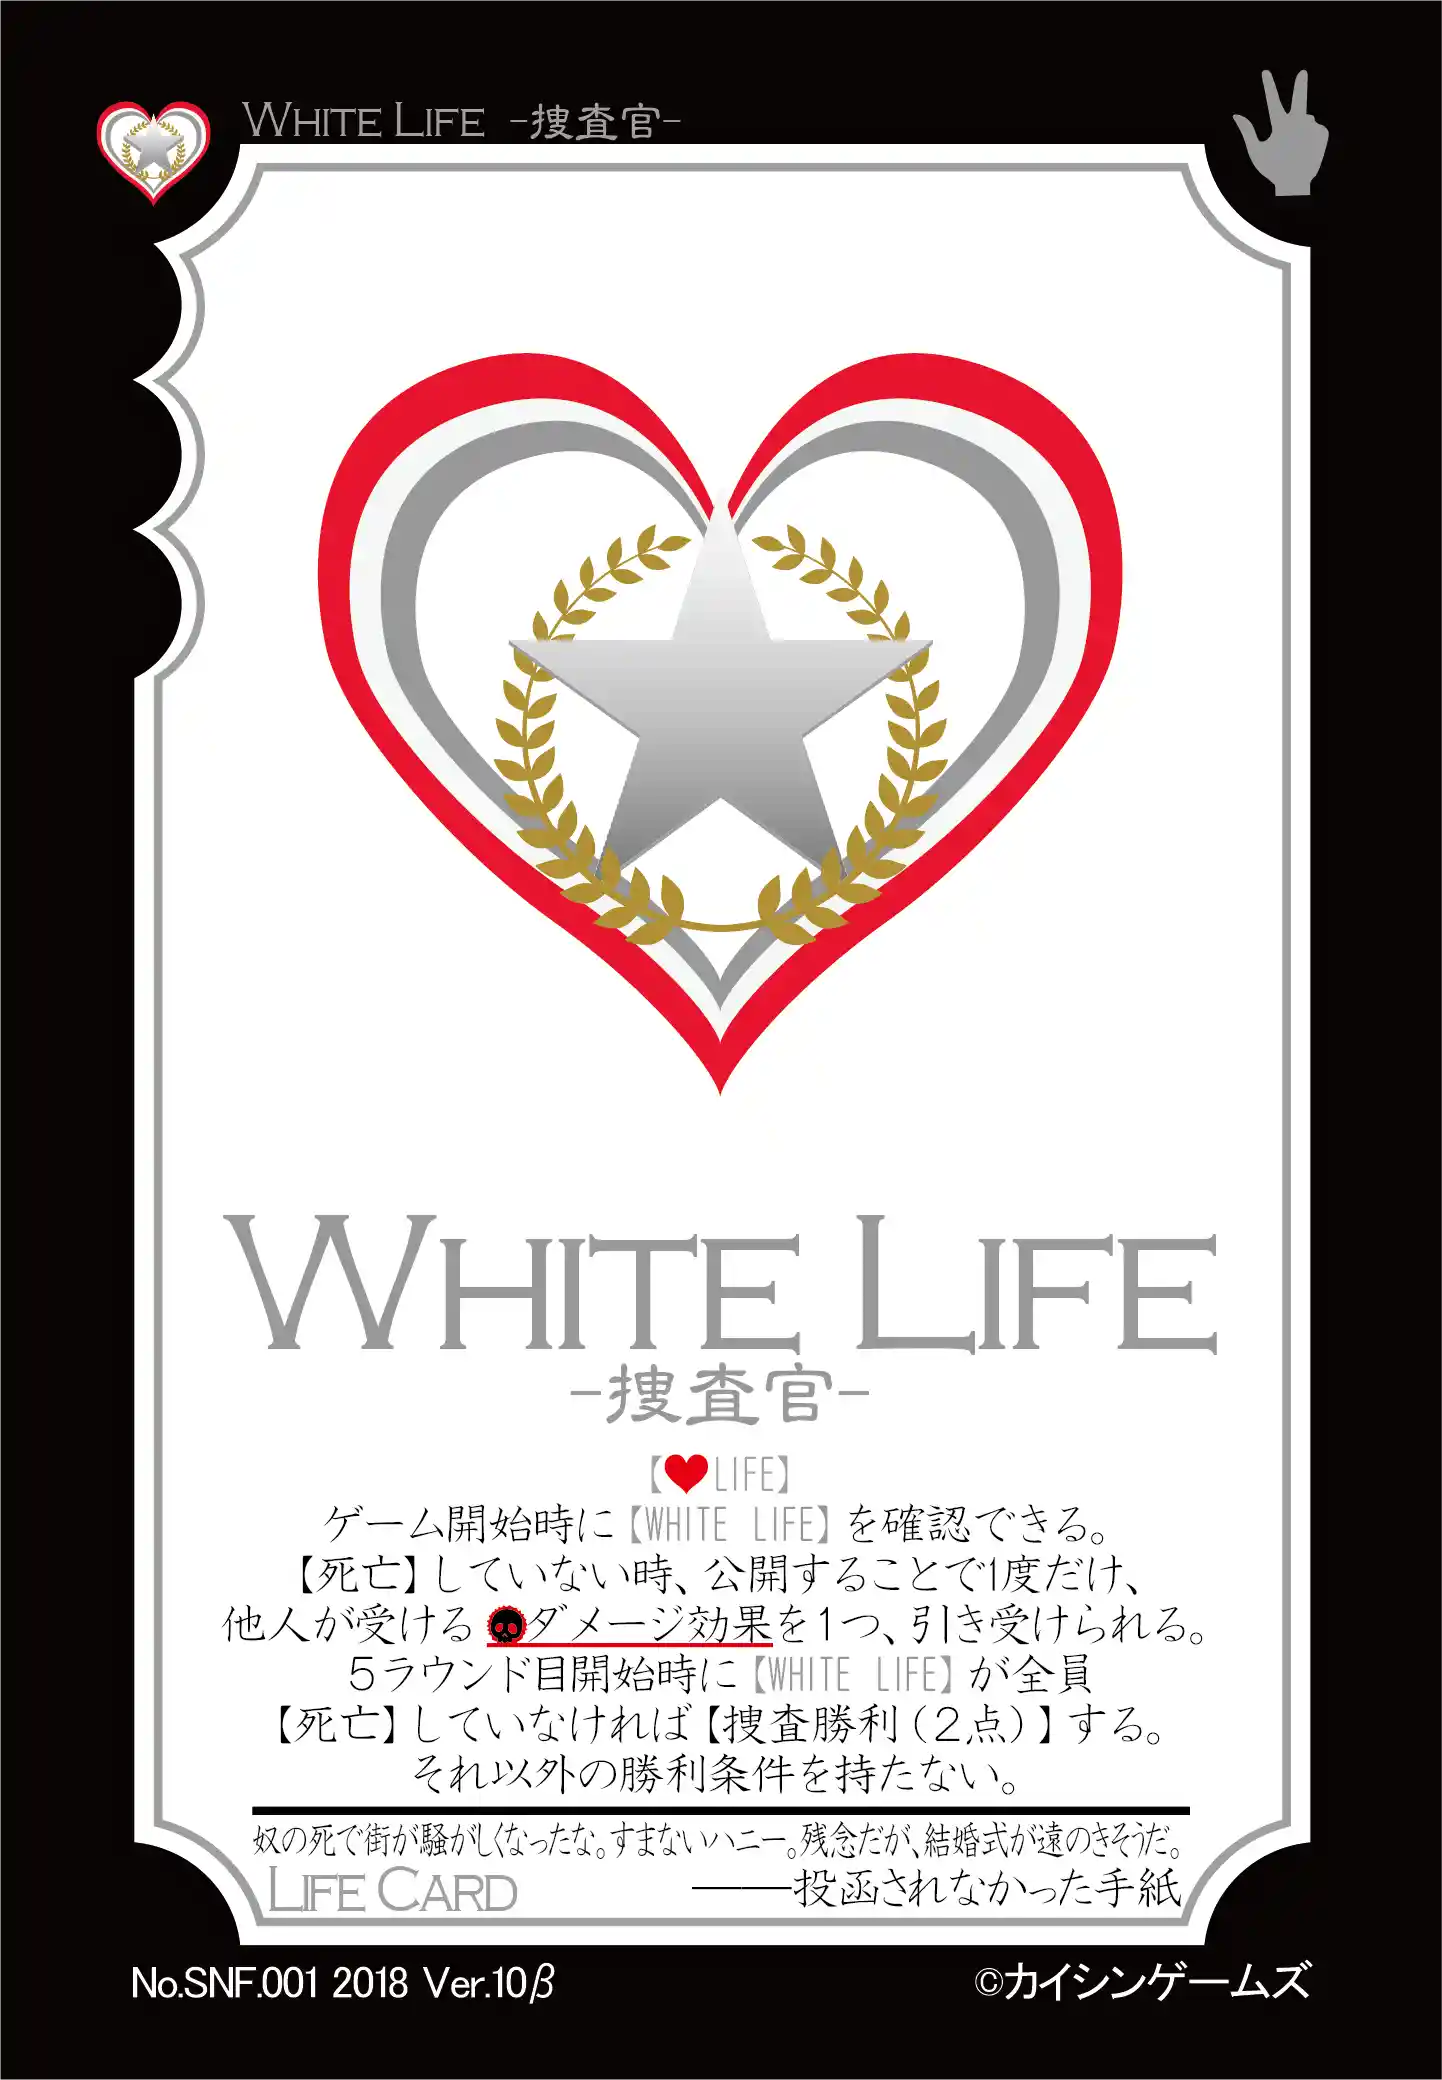 WHITE LIFE